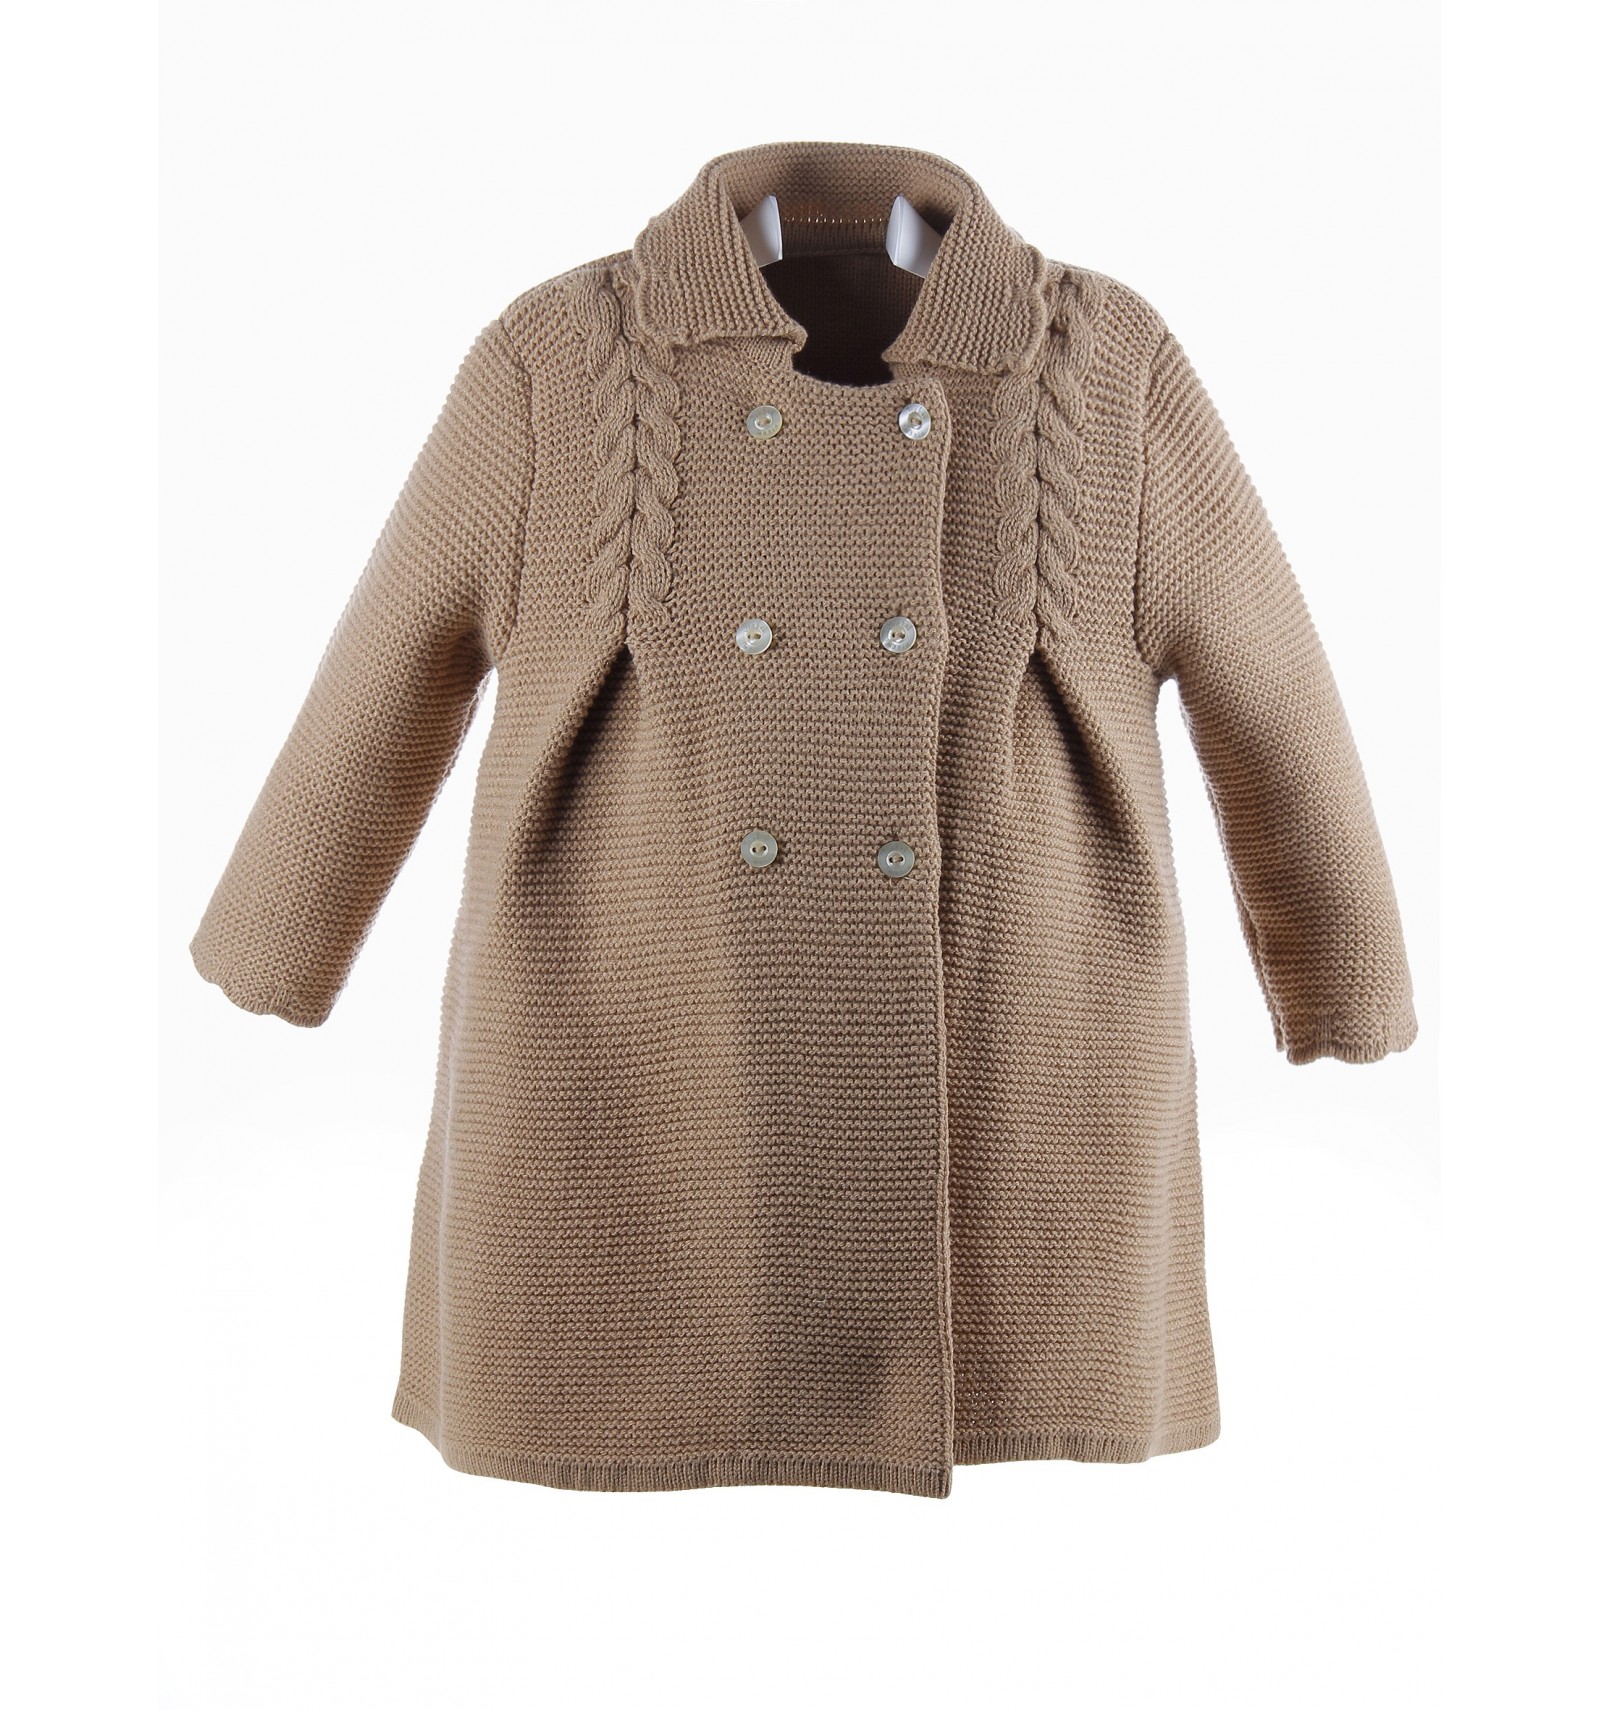 Chaqueta de lana con popelín ecológico de Monaluna Ropa Ropa para niña Chaquetas y abrigos 